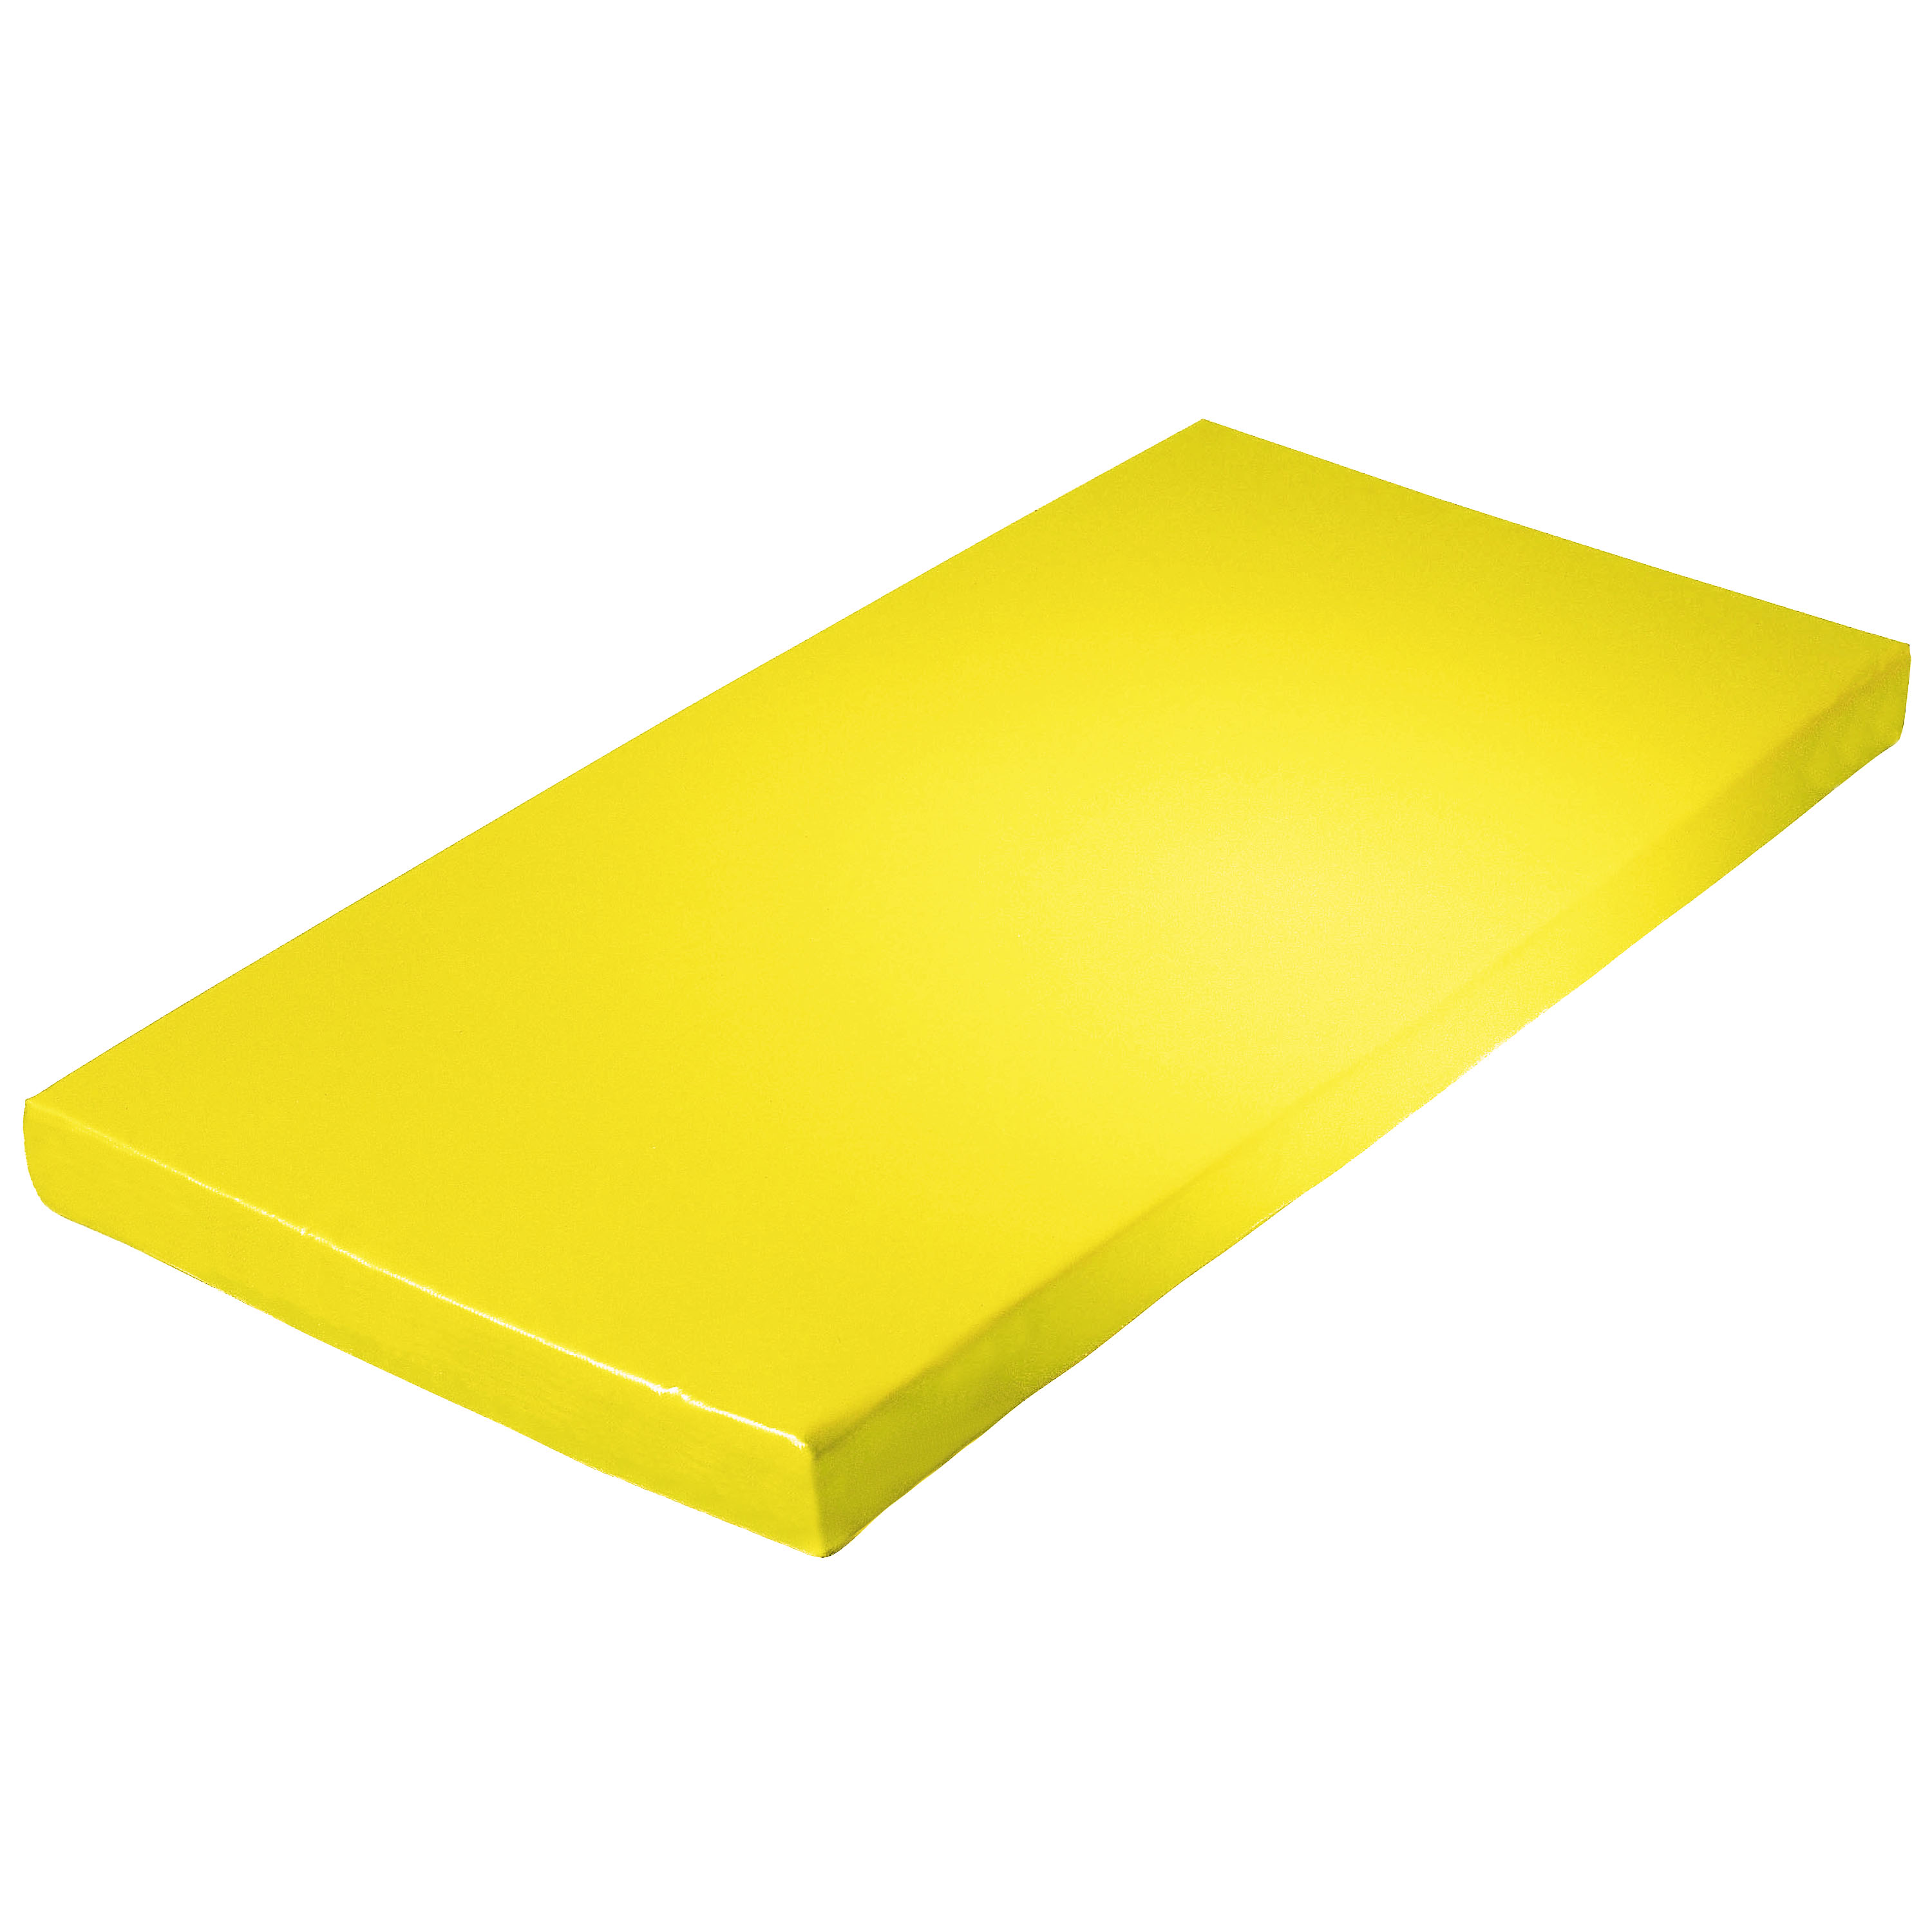 Super-Leichtturnmatte 150 x 100 x 8 cm, gelb